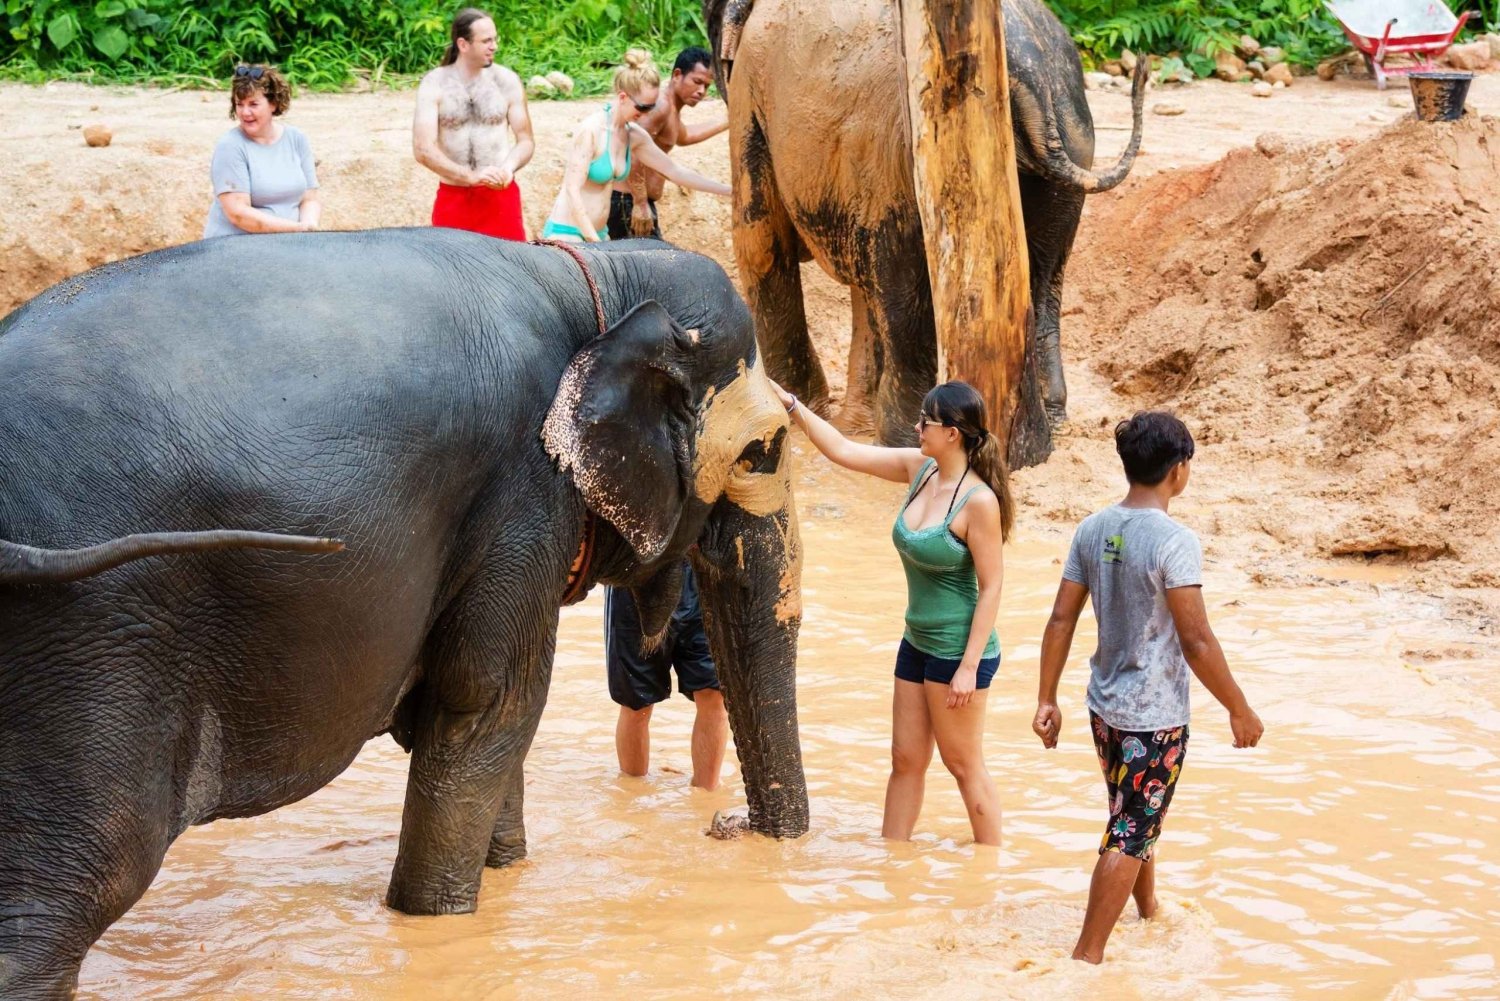 Phuket: Phuket Elephant Sanctuary, Wat Chalong & more